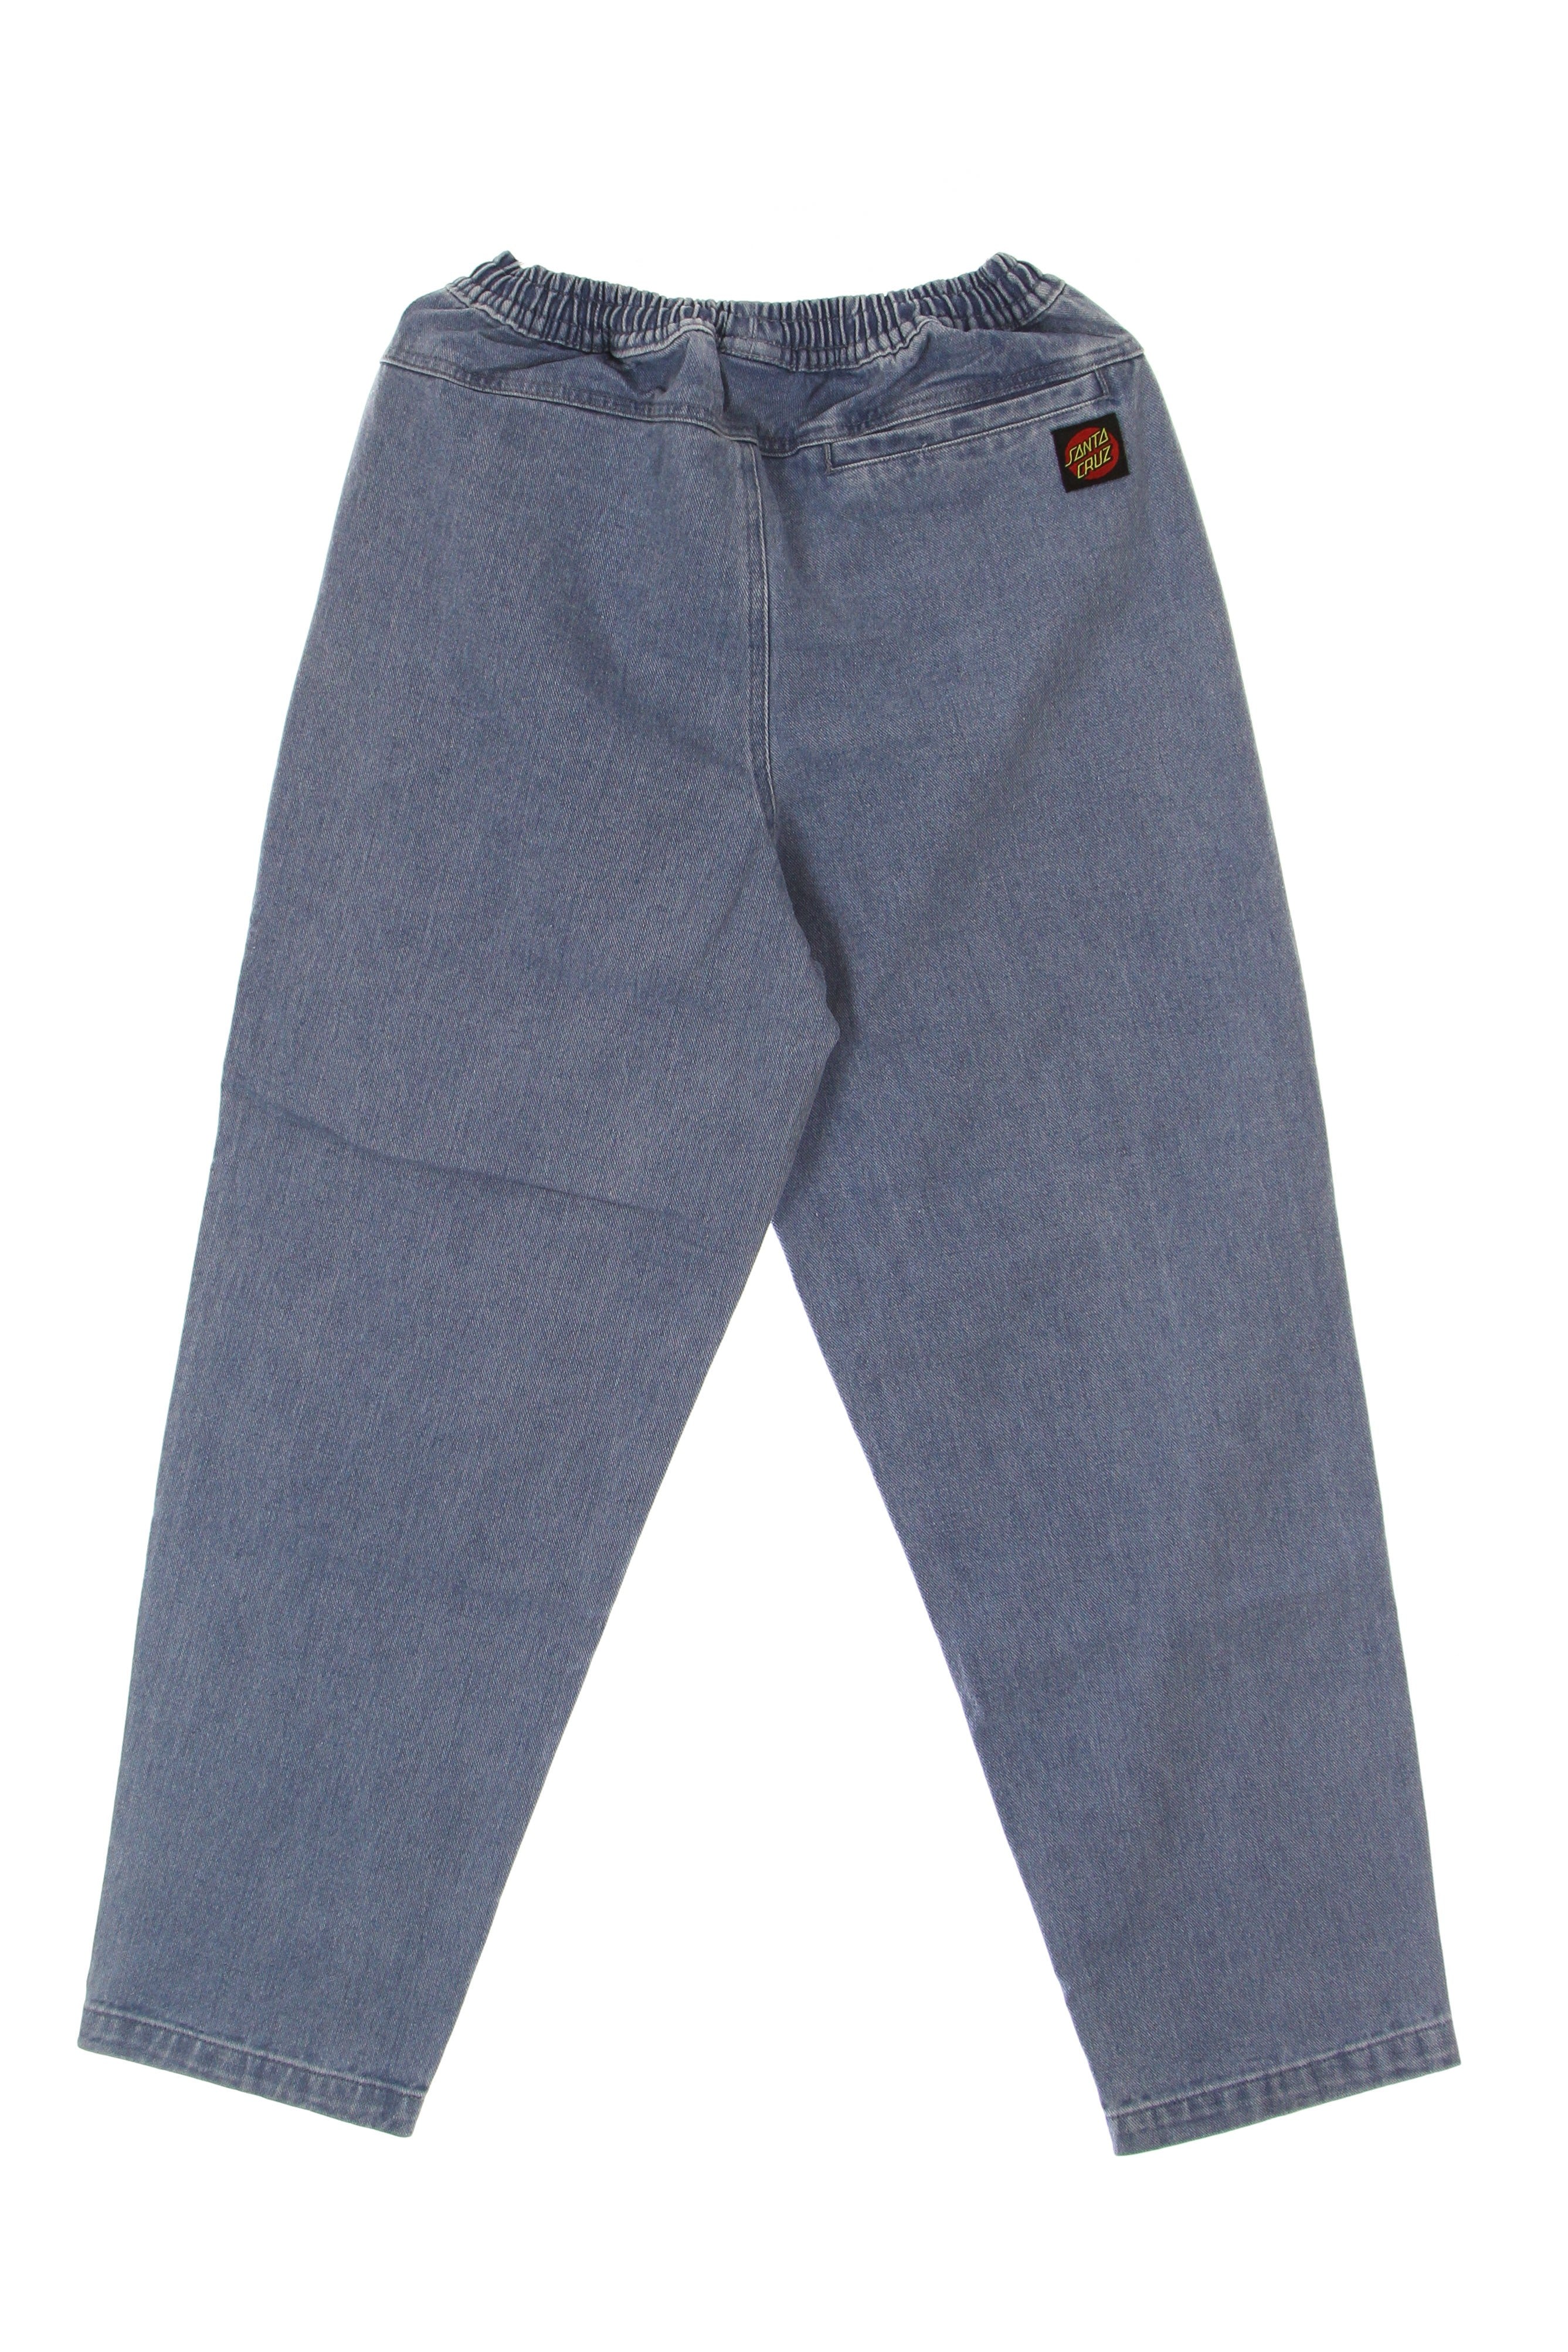 Local Pant Men's Jeans Blue Stonewash Denim